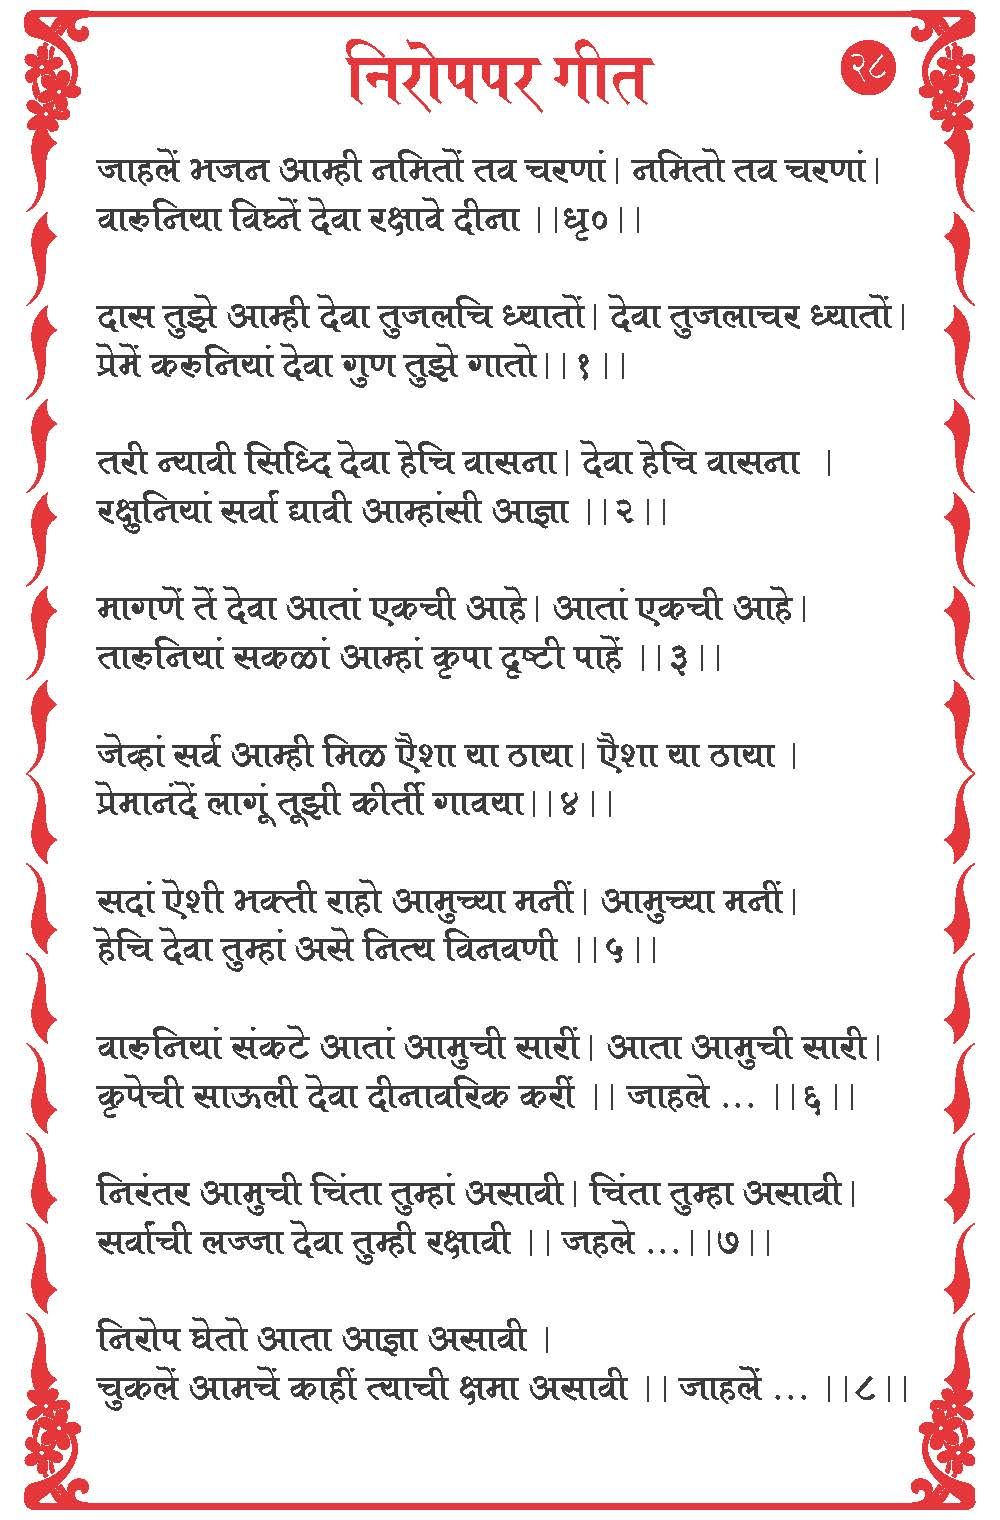 free download ganesh aarti marathi lyrics geet